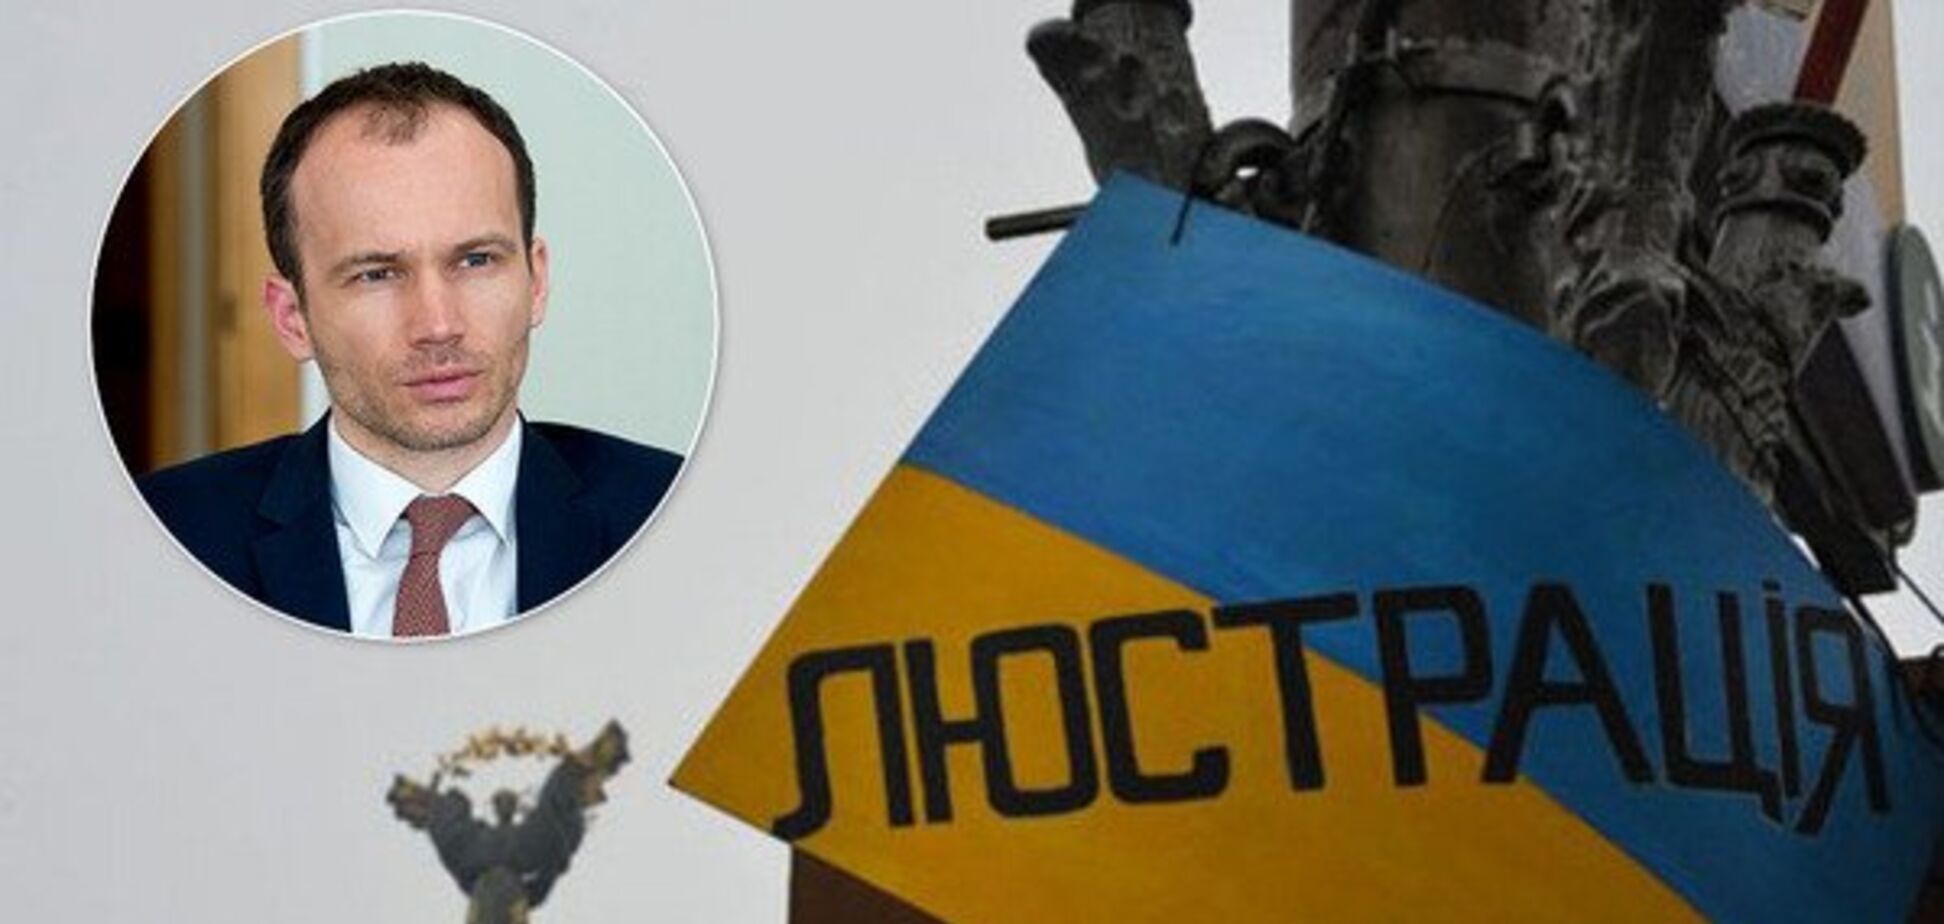 Уволенным чиновникам заплатят миллиарды: как украинцы расплатятся за люстрацию